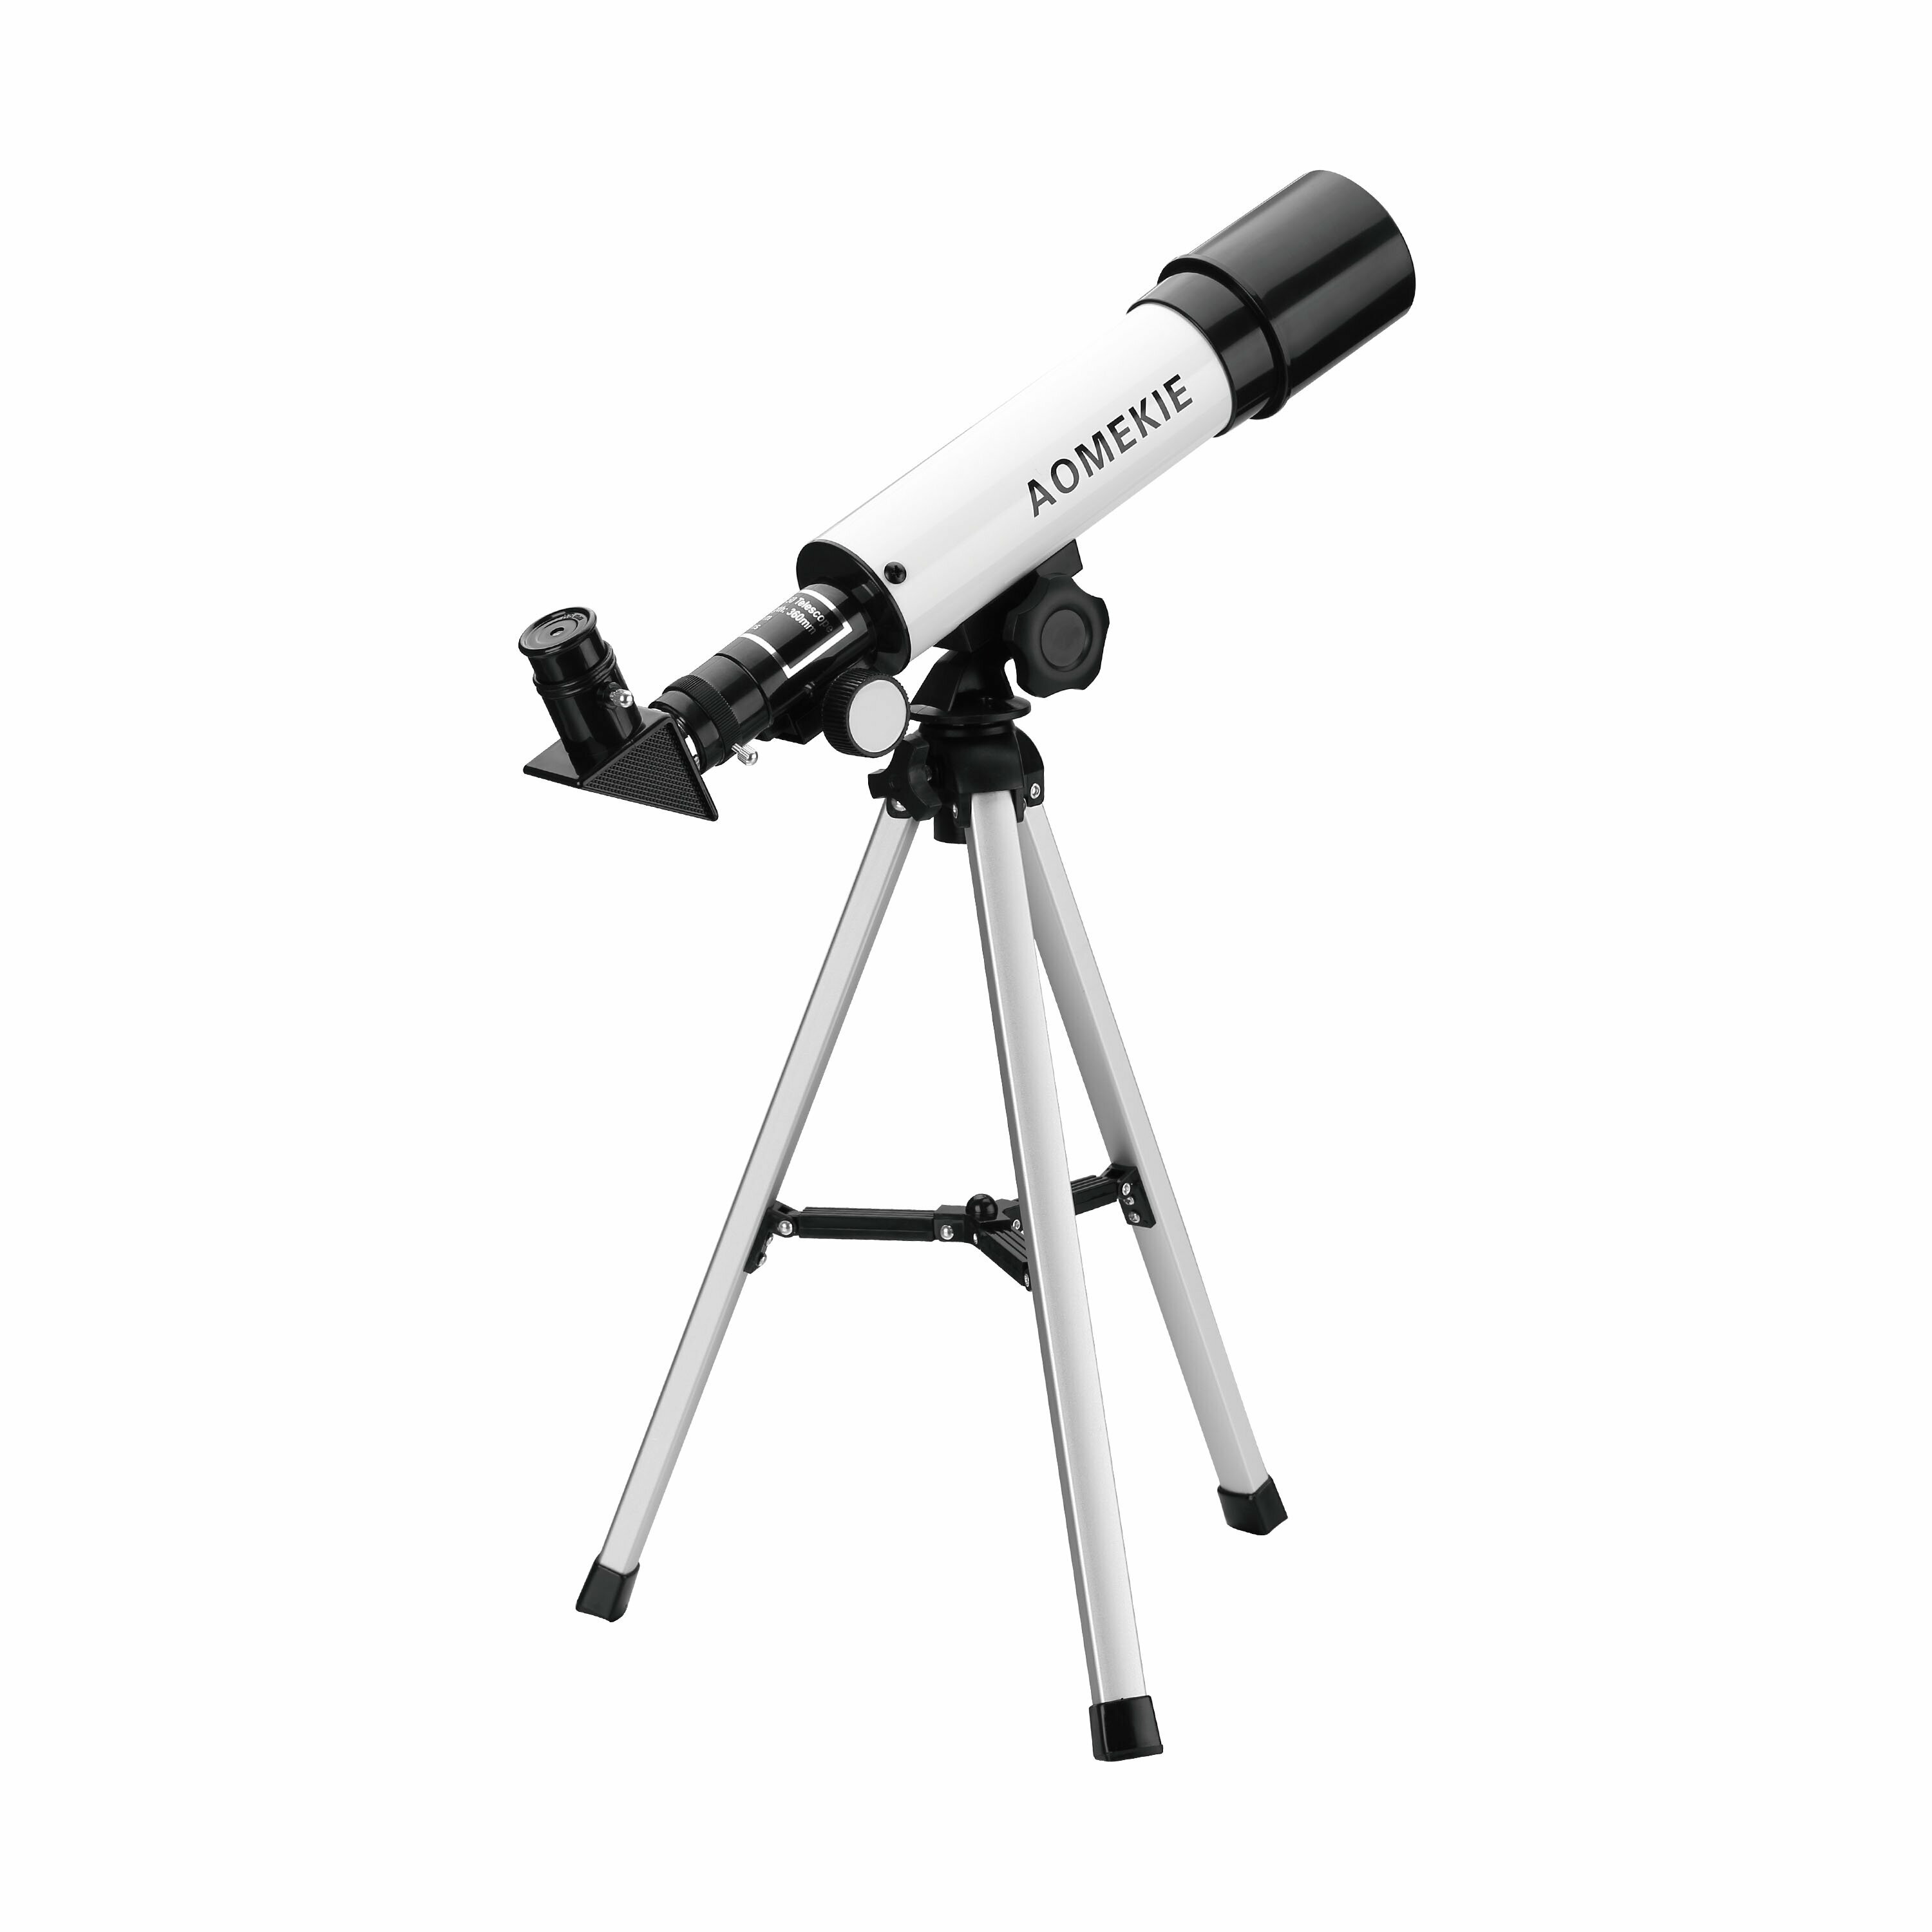 [EU Direto] Telescópio Astronômico AOMEKIE para Crianças 50/360mm Telescópio para Iniciantes em Astronomia com Estojo de Transporte, Tripé, Ocular Retificador de Refração Telescópio AO2008